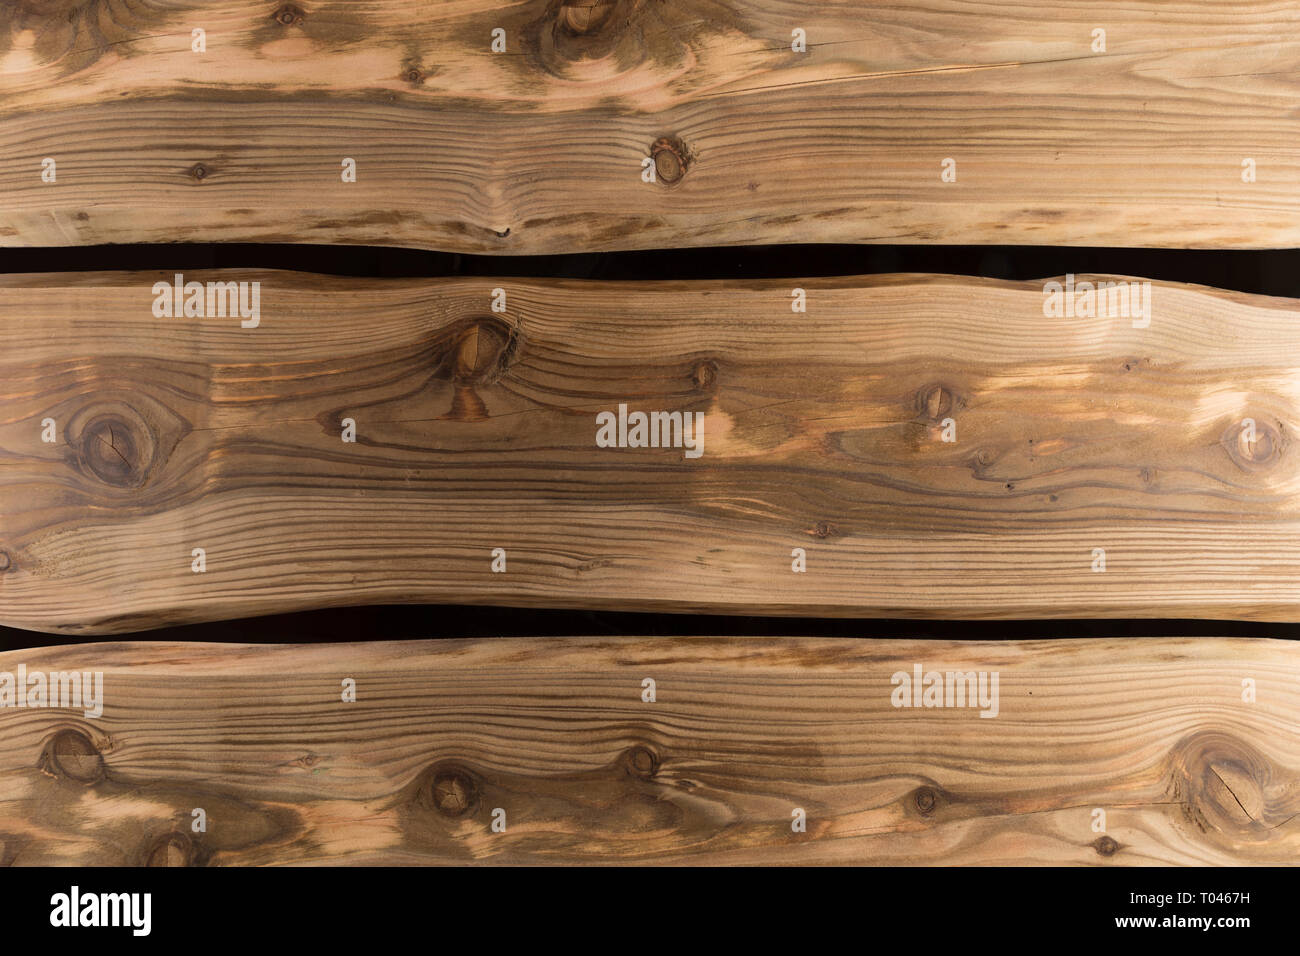 Holz Textur Oberfläche. Natürliche strukturierten hölzernen Planken/Diele/dicken Brett Hintergrund. Tabelle, Holz-, Boden oder Wand. Stockfoto